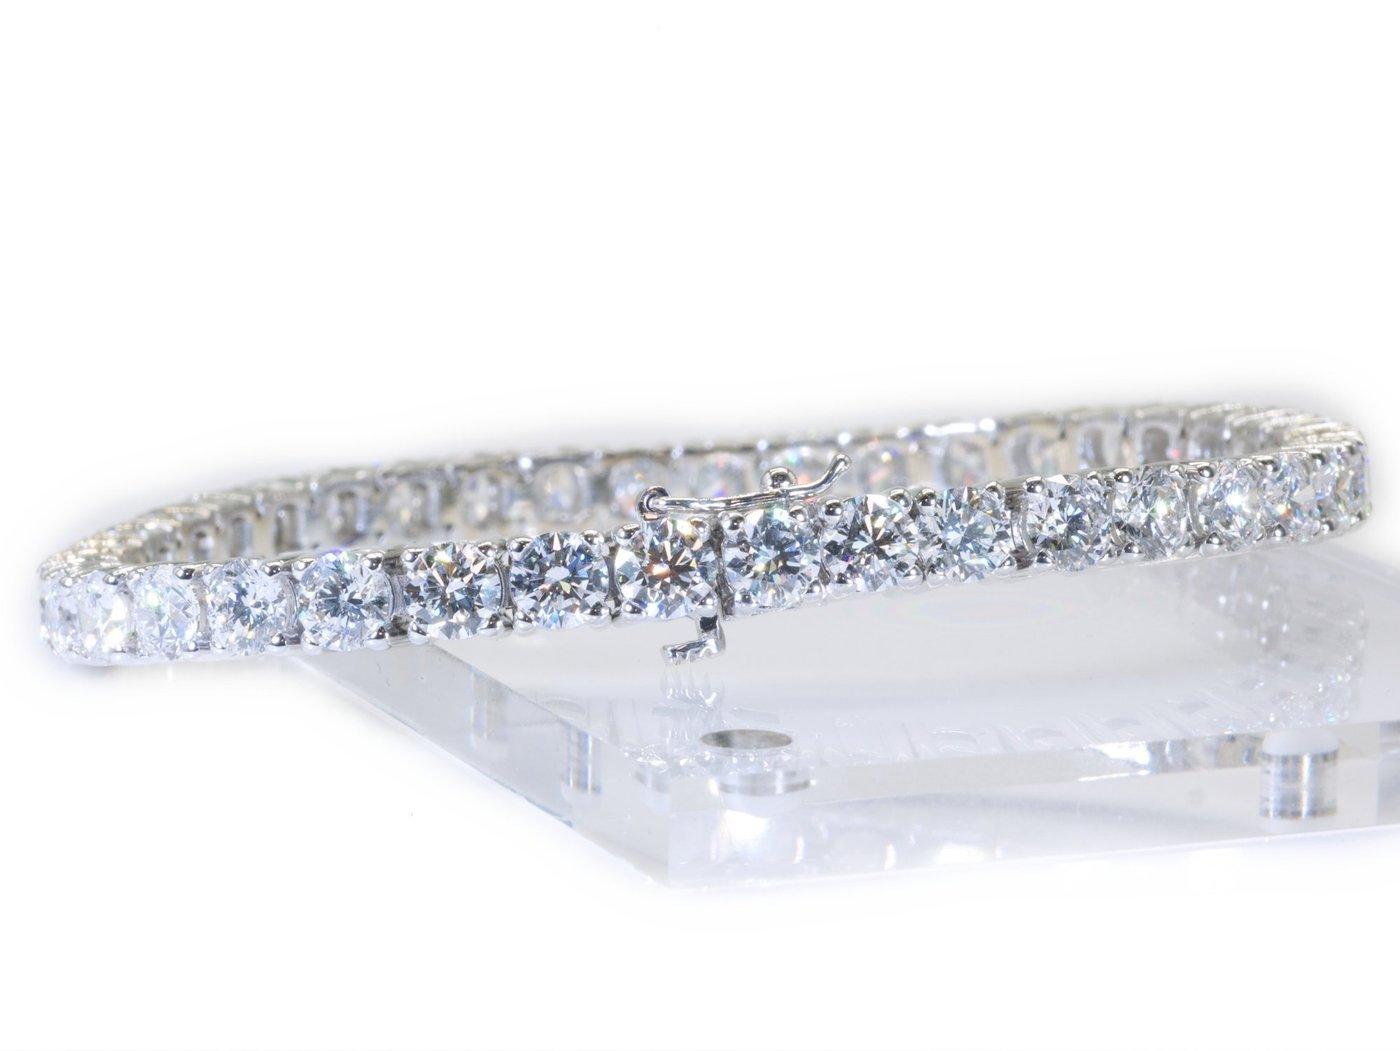 Bracelet de tennis idéal et brillant avec 40 diamants naturels de qualité D/VVS1 tous les diamants de taille idéale avec des paramètres 3EX ce qui rend ce bracelet de tennis extrêmement brillant et étincelant tous les diamants sont livrés avec un